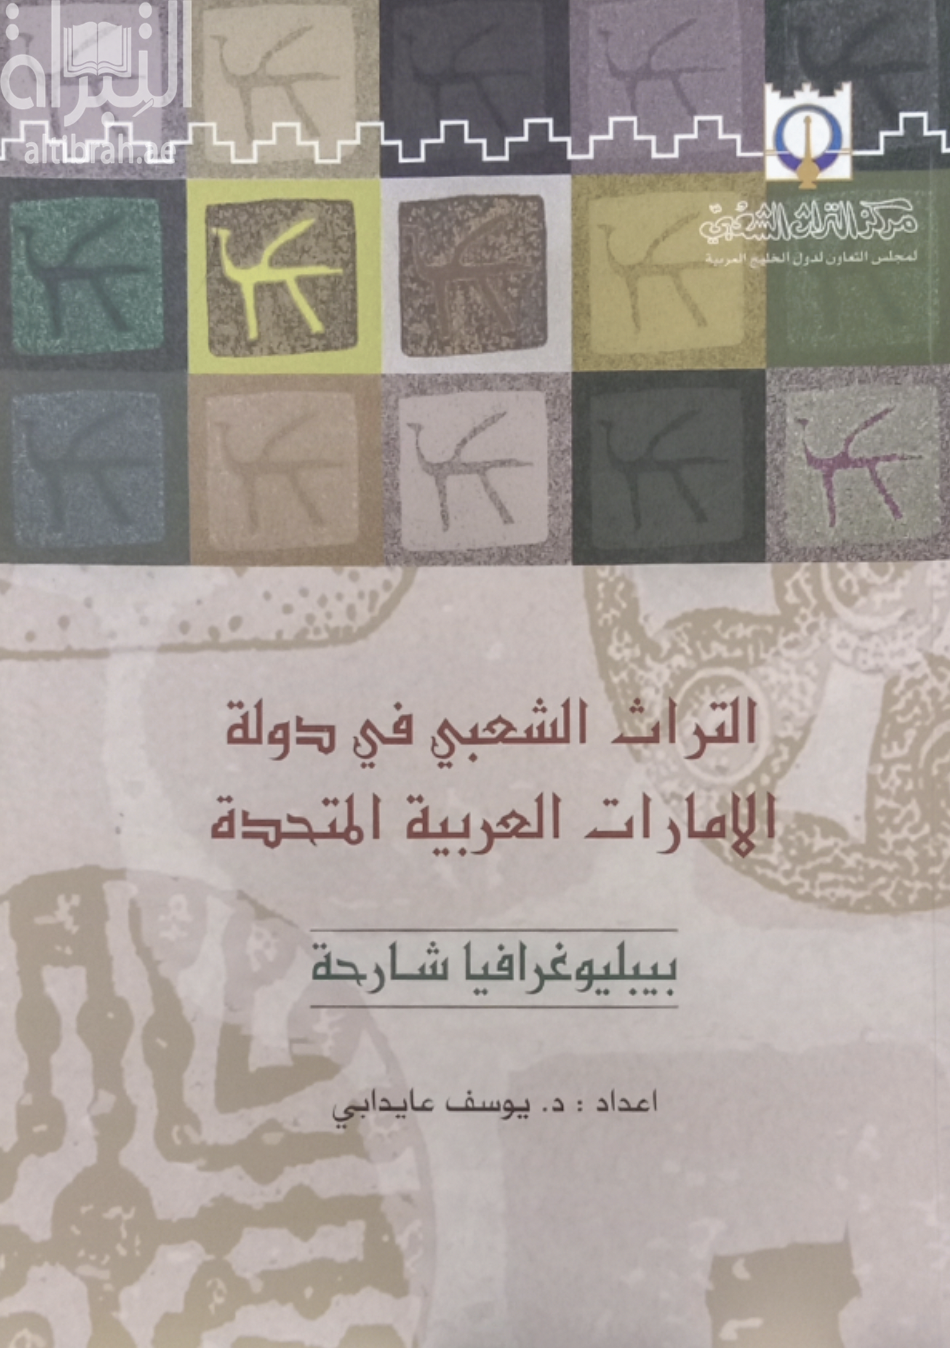 التراث الشعبي في دولة الإمارات العربية المتحدة : بيبليوغرافيا شارحة